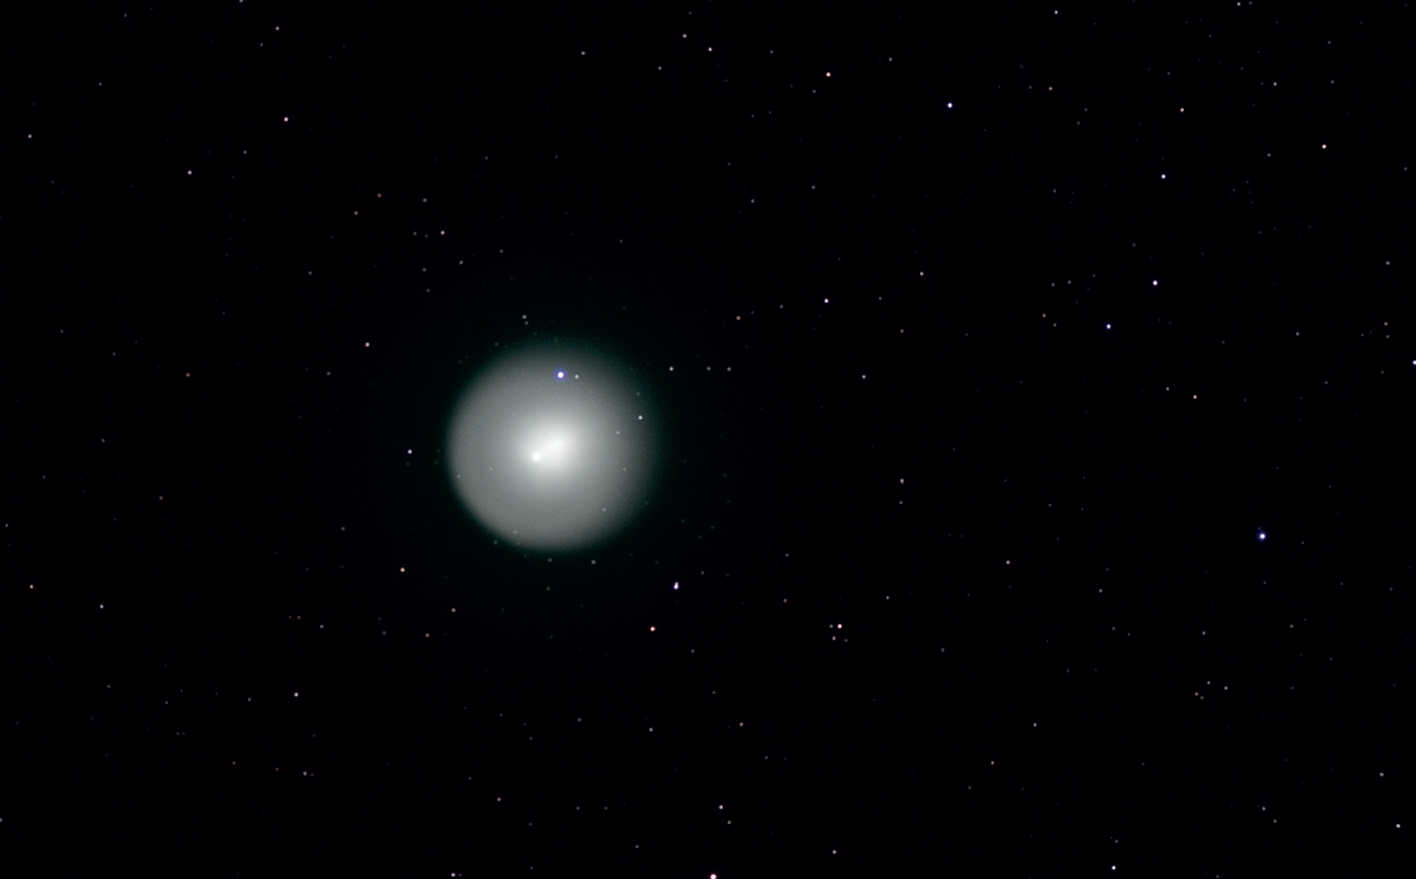 Nel 2007 la cometa periodica 17P (Holmes) ha dominato il cielo autunnale. La forma nitida e la grande testa si notano bene in questa immagine in bianco e nero, ottenuta il 01/11/2007 con una fotocamera CCD raffreddata e un telescopio Takahashi FS-102. Anche se le comete che brillano in verde sono di solito immortalate a colori, anche questa in bianco e nero ha un fascino particolare. U. Dittler